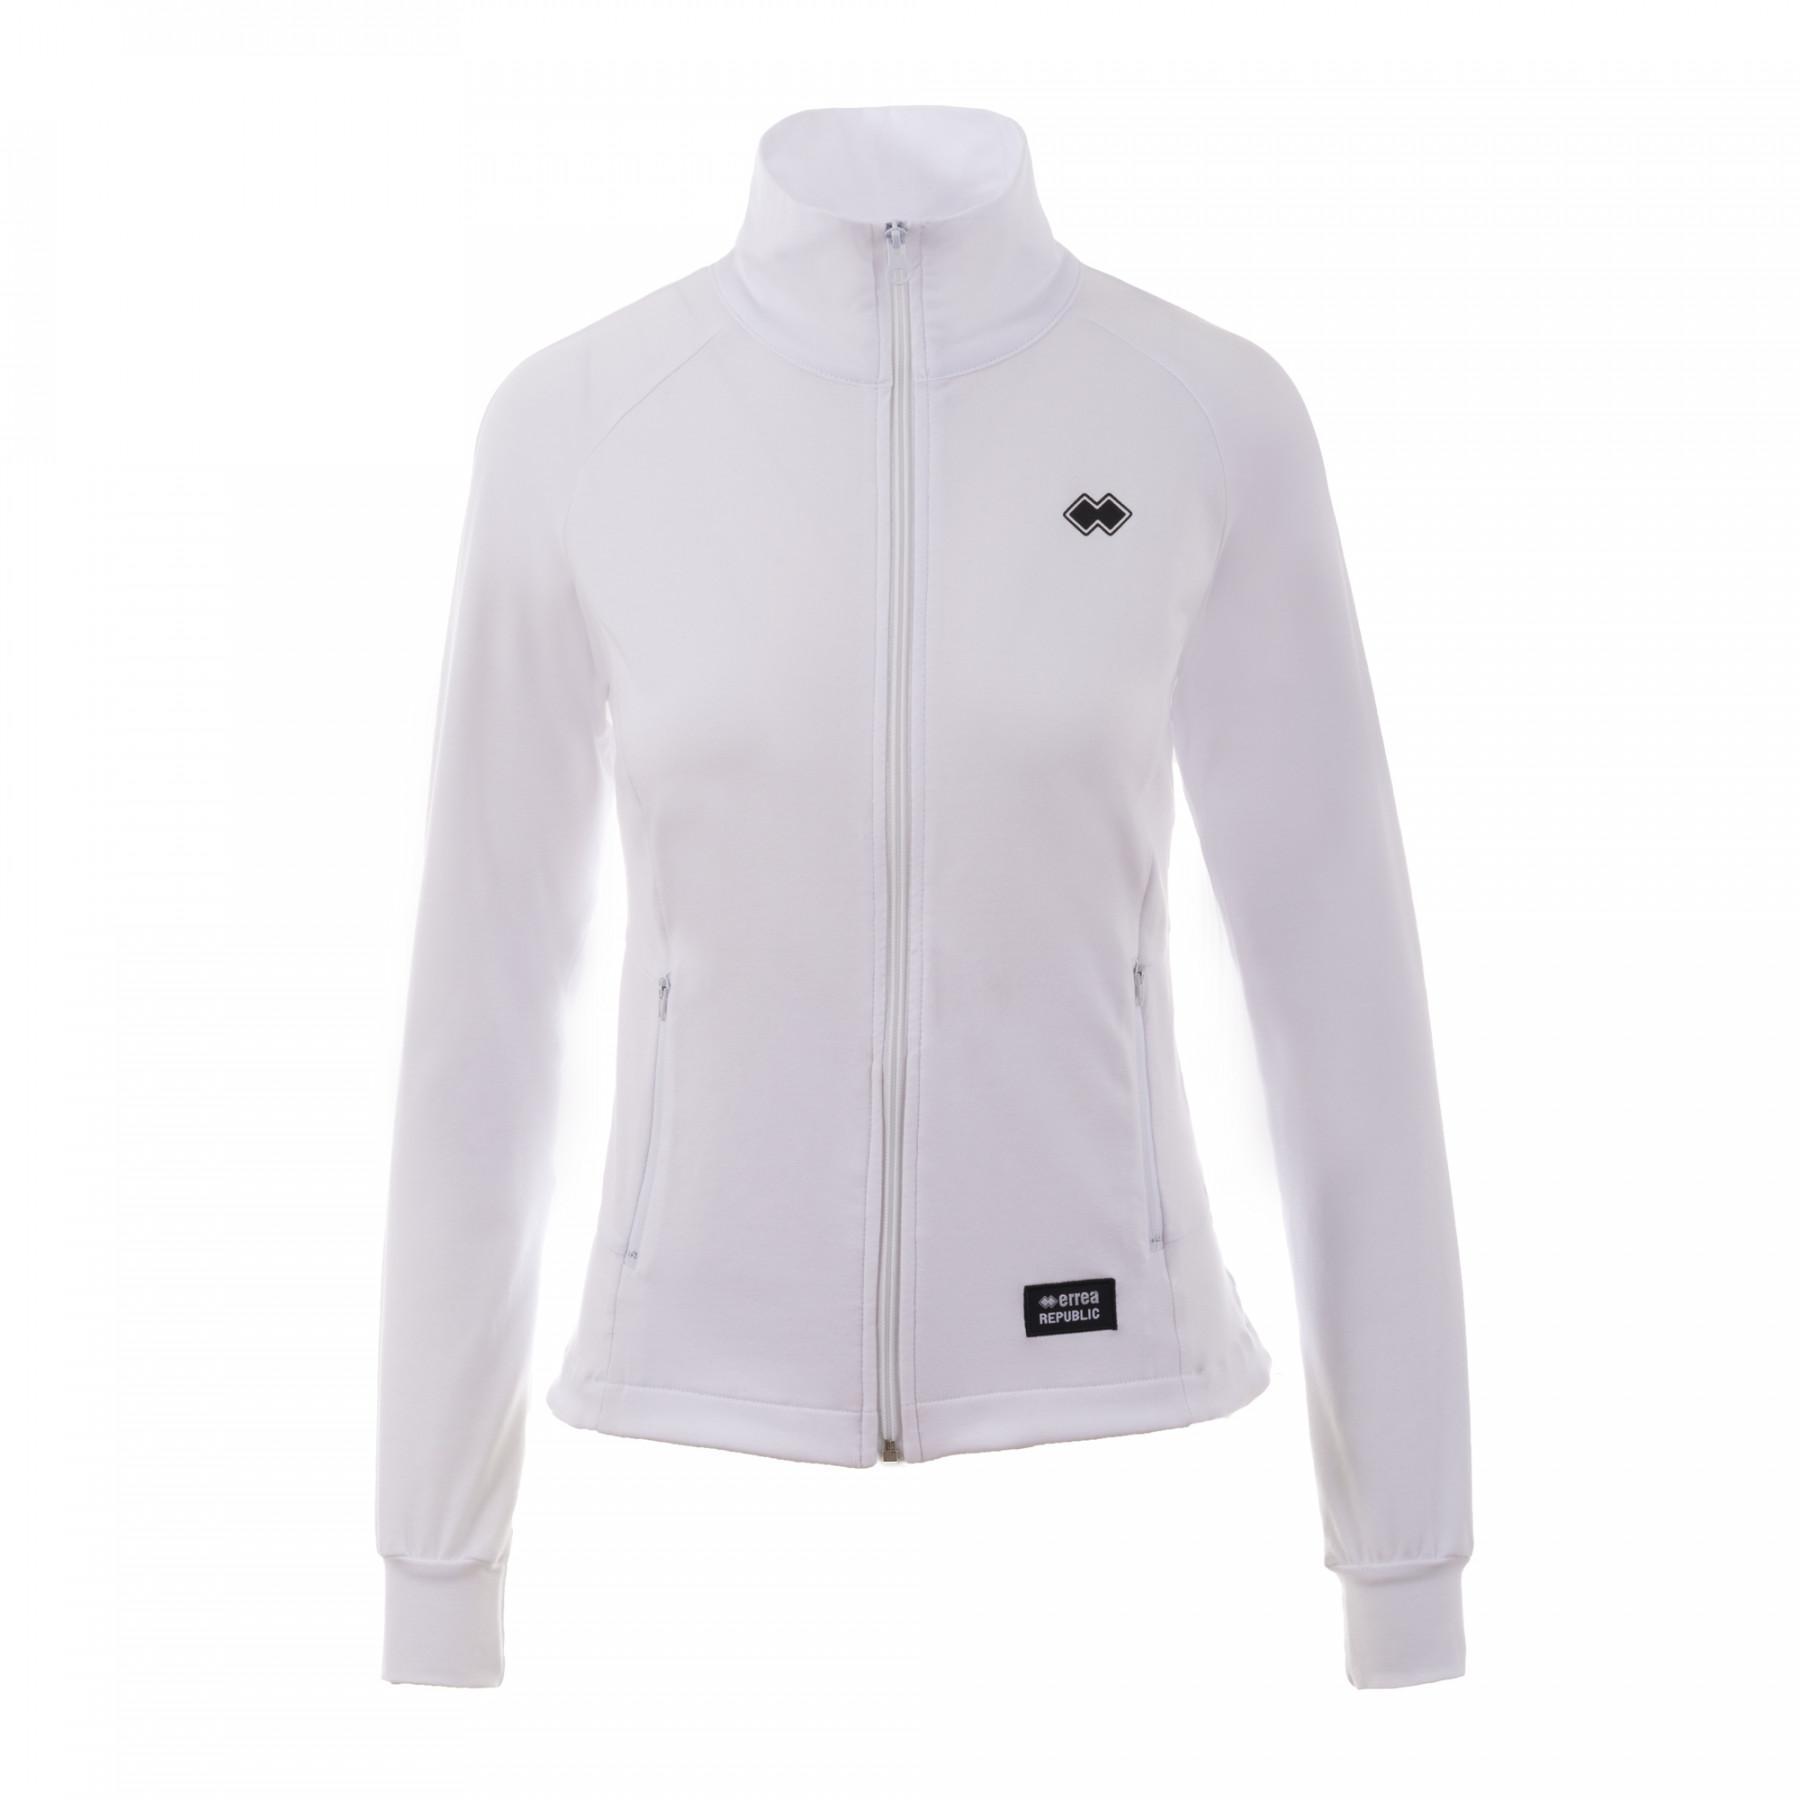 Women's jacket Errea sport fusion full zip ad